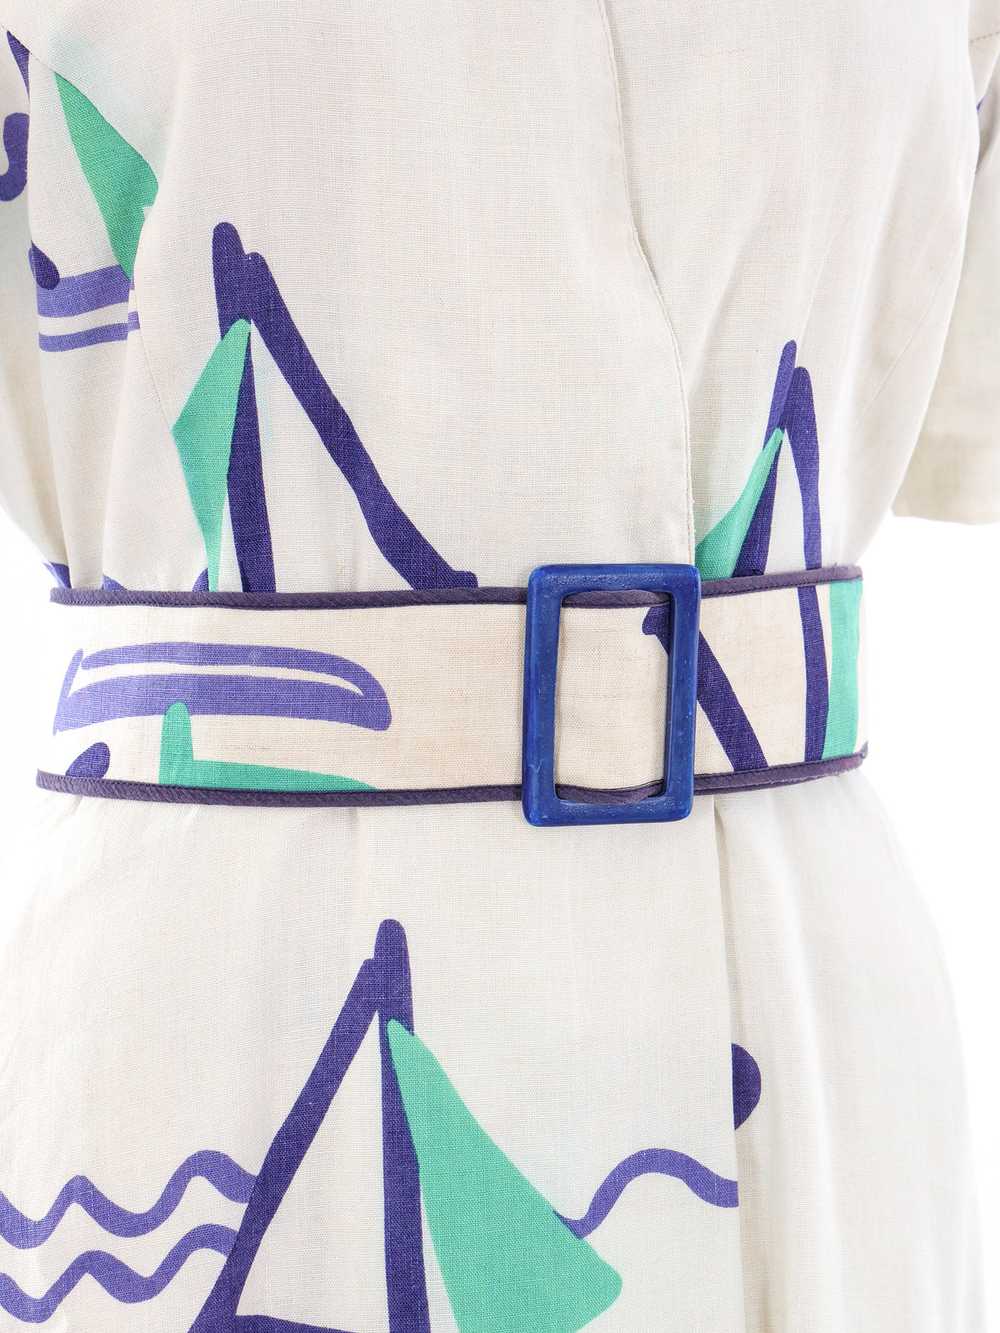 Hanae Mori Nautical Print Dress - image 5